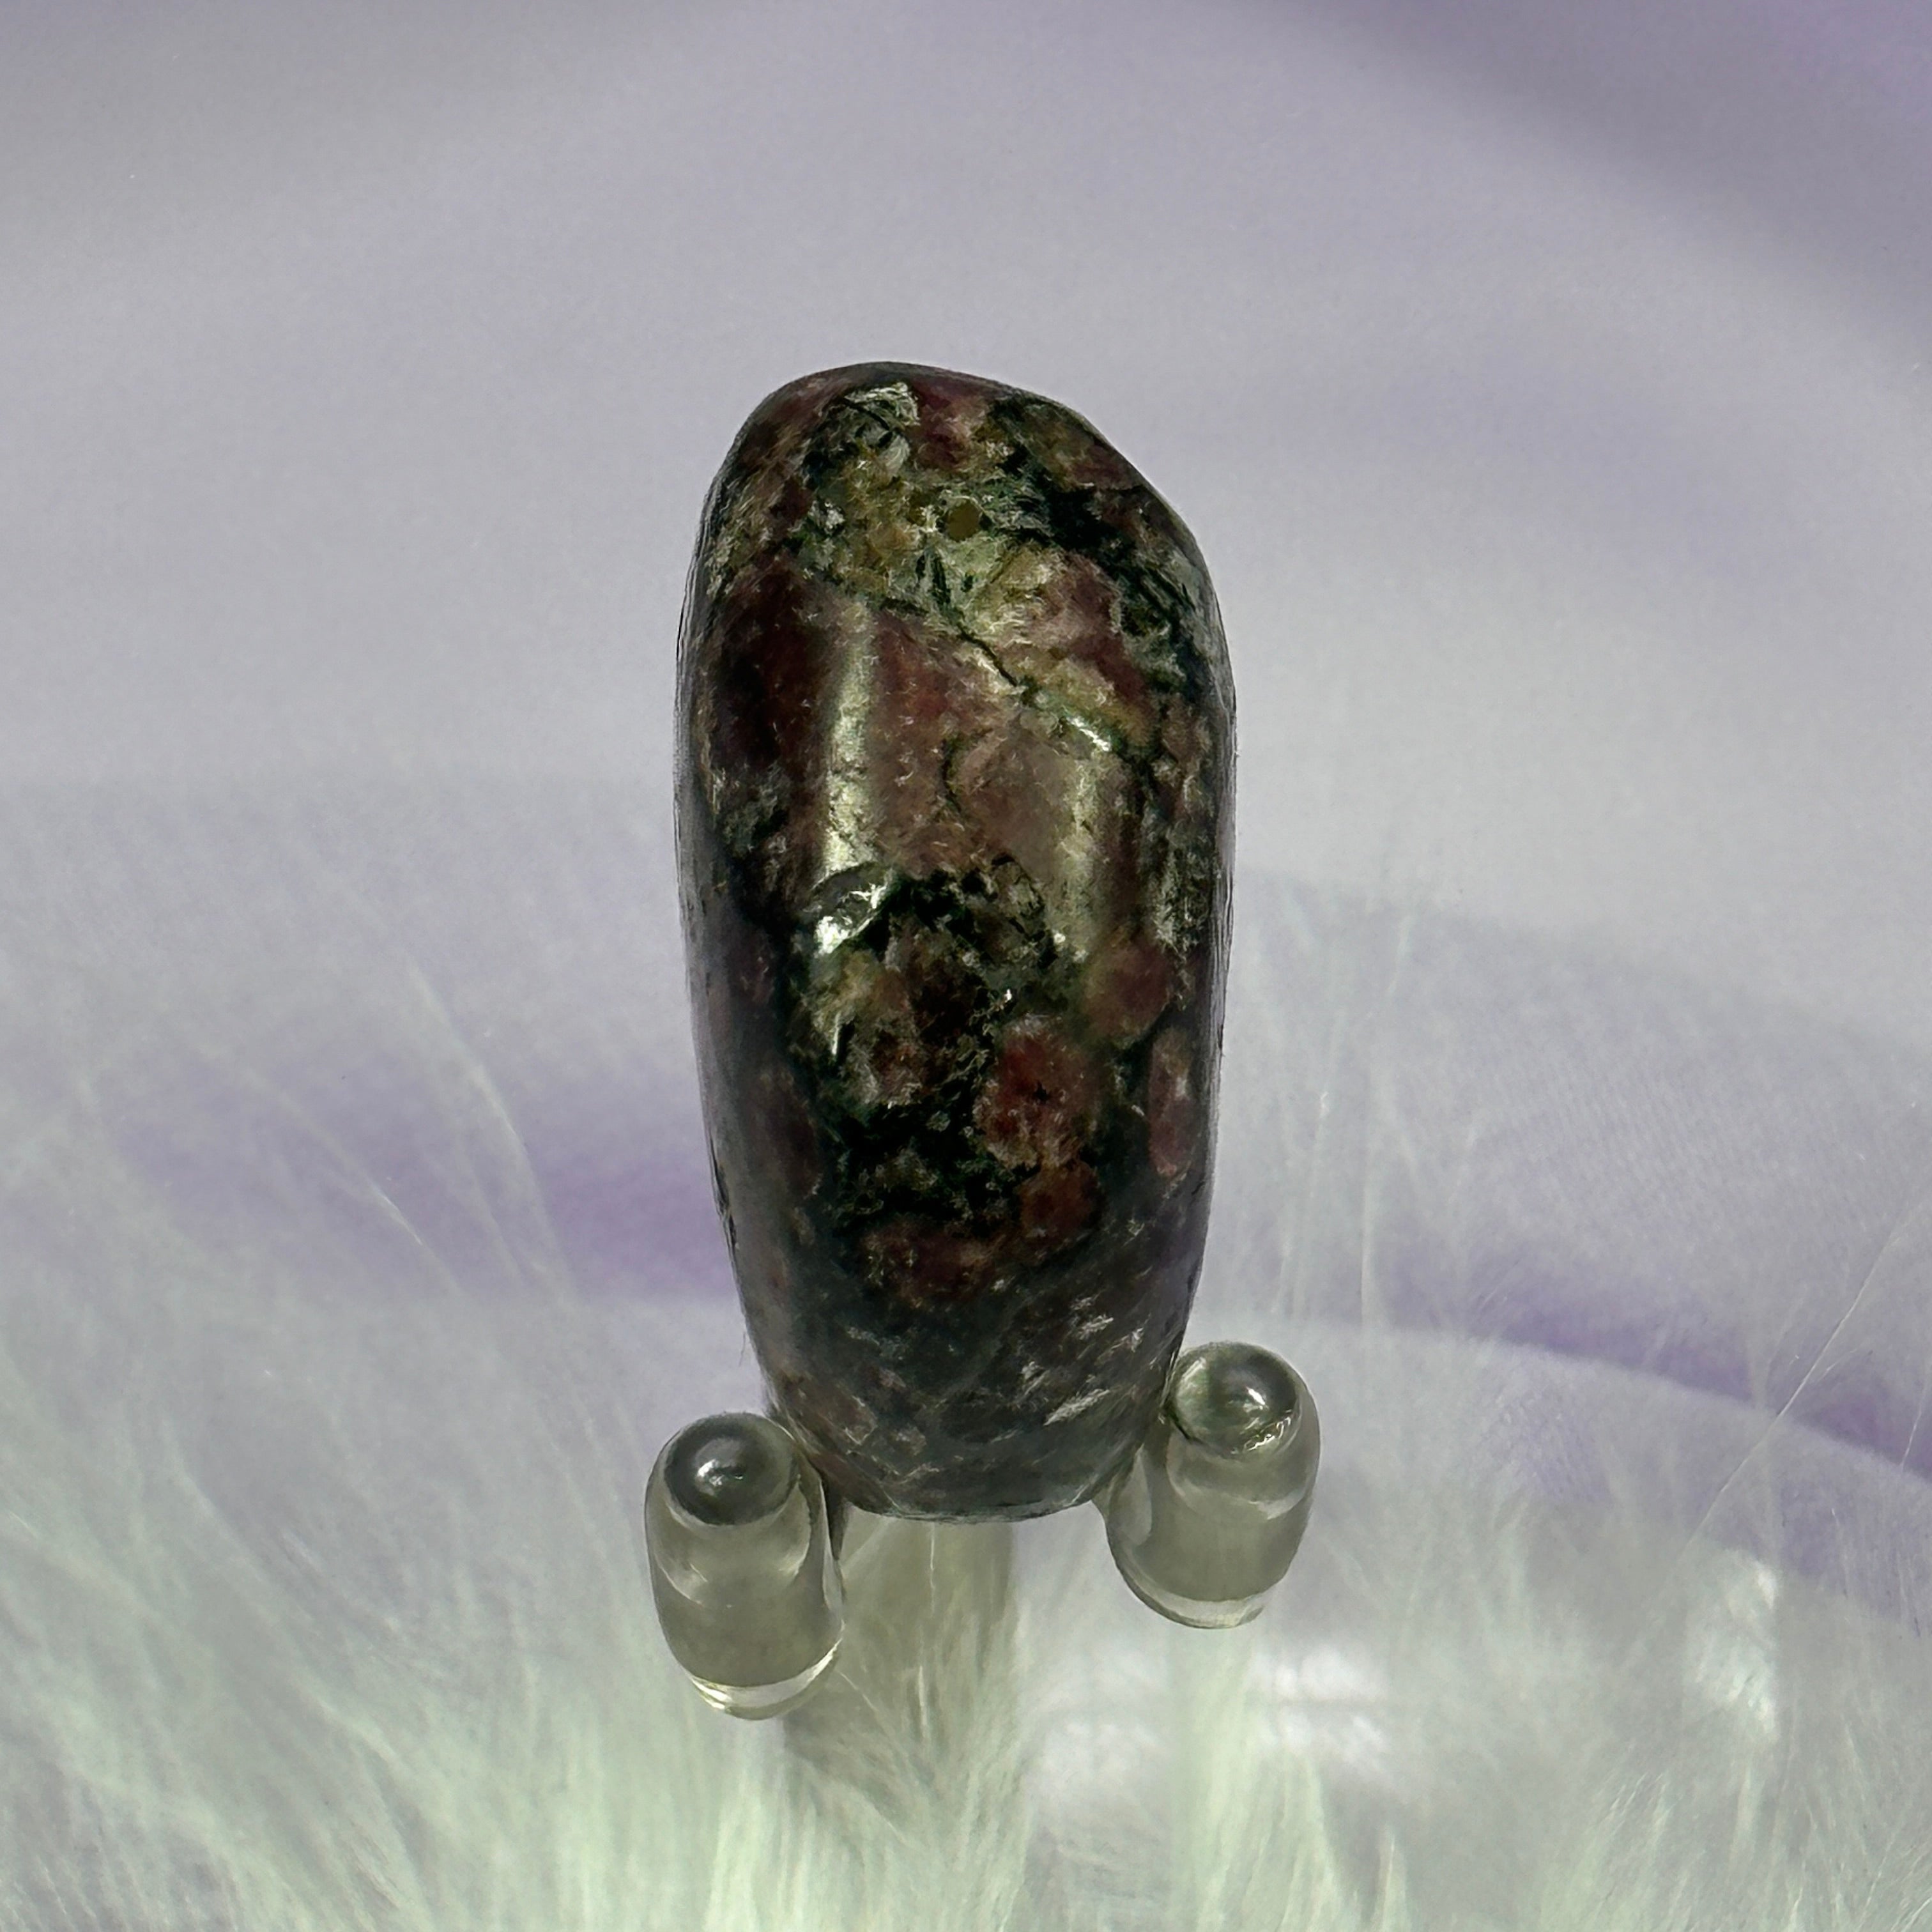 Rare Eudialyte crystal tumble stone 13.0g SN56003